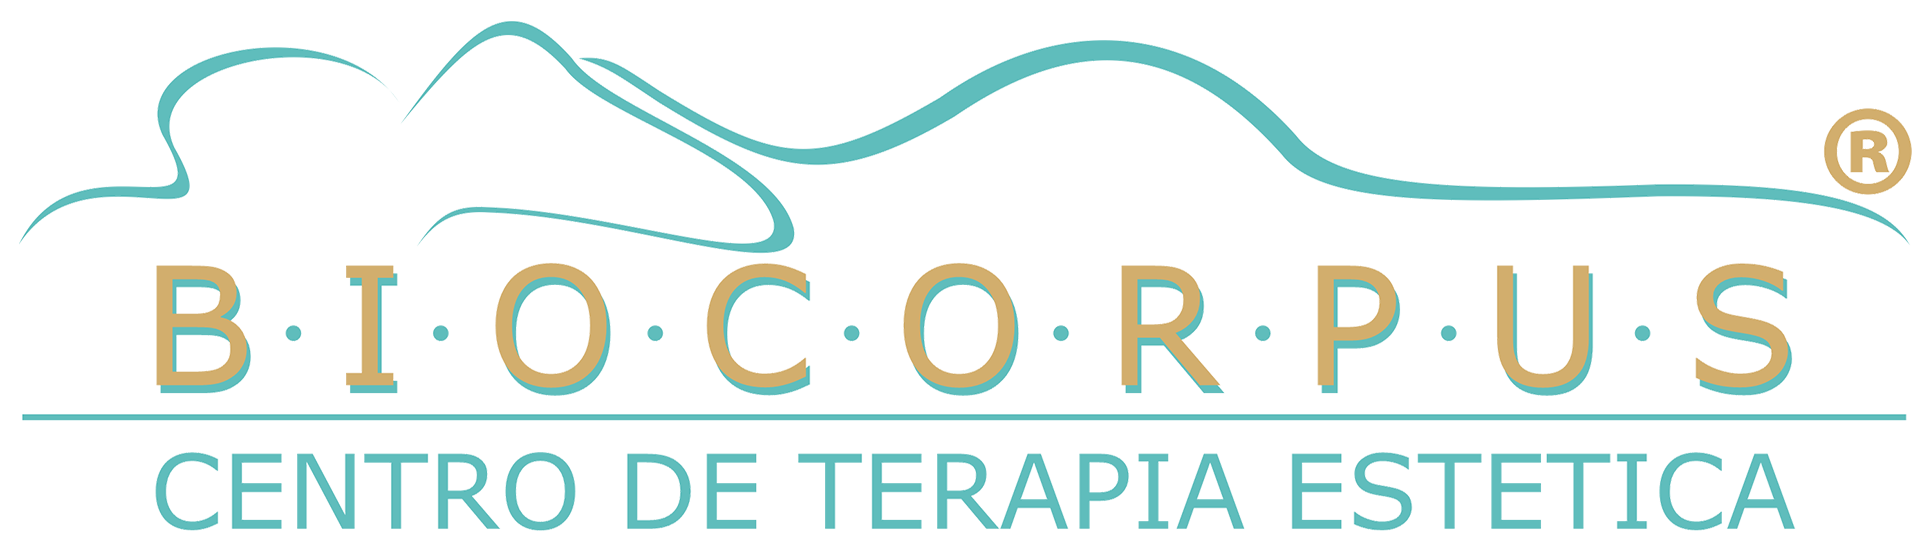 Biocorpus - Centro de Terapia Esttica